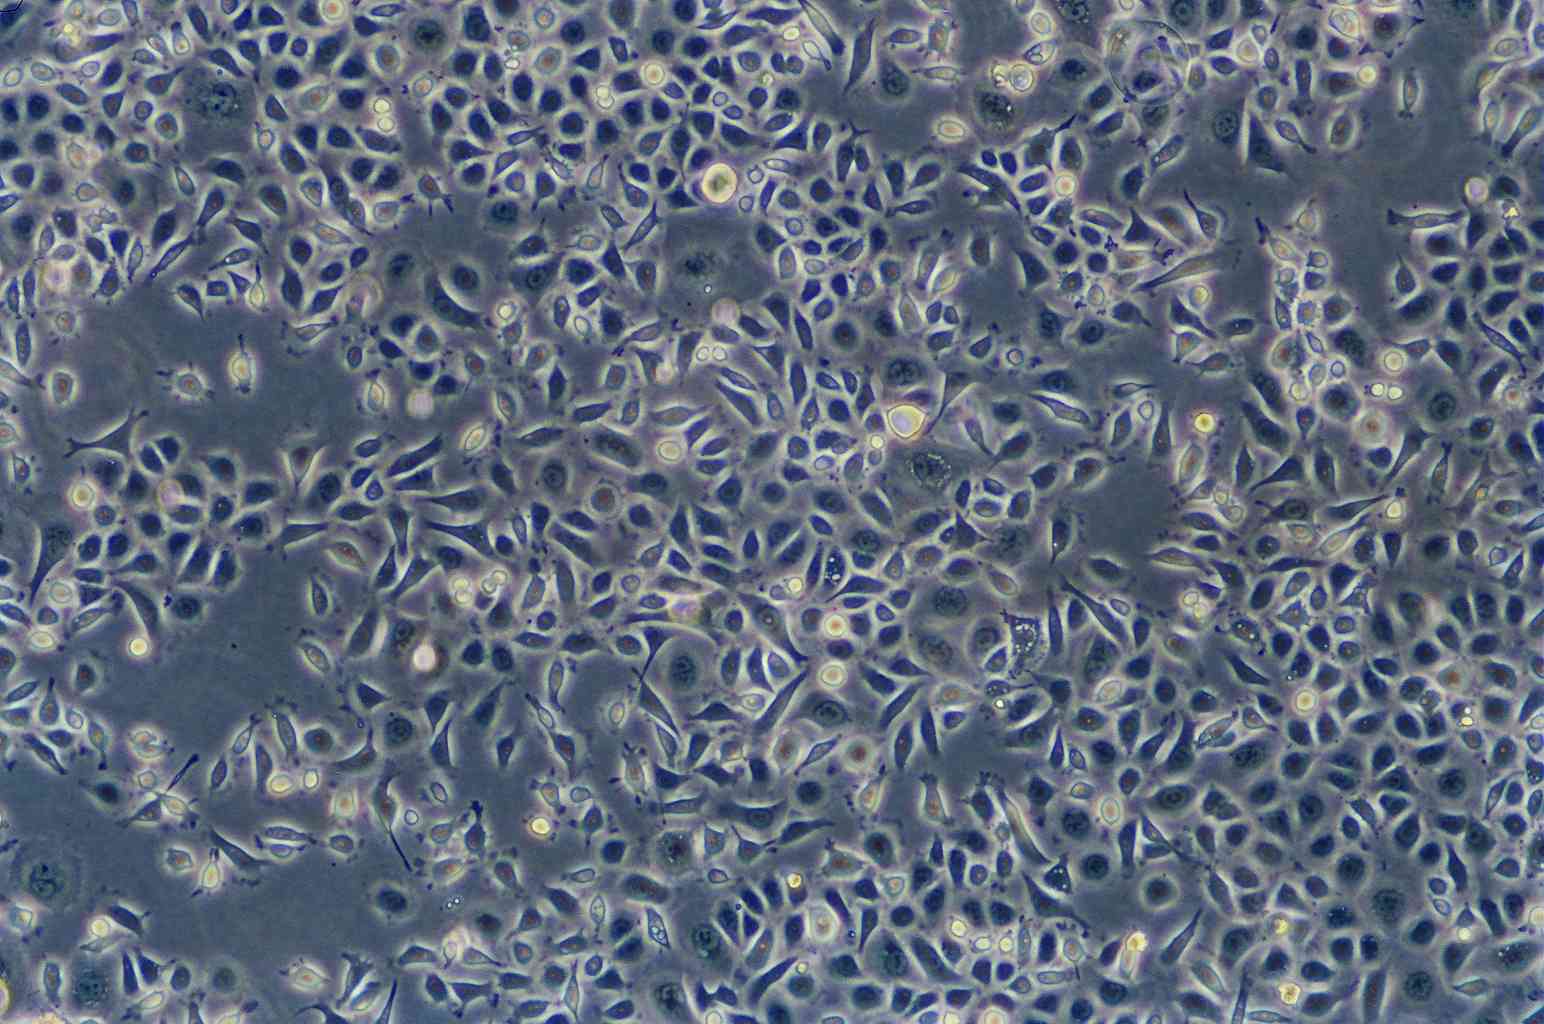 OCM-1A Cells|人脉络膜黑色素瘤可传代细胞系,OCM-1A Cells